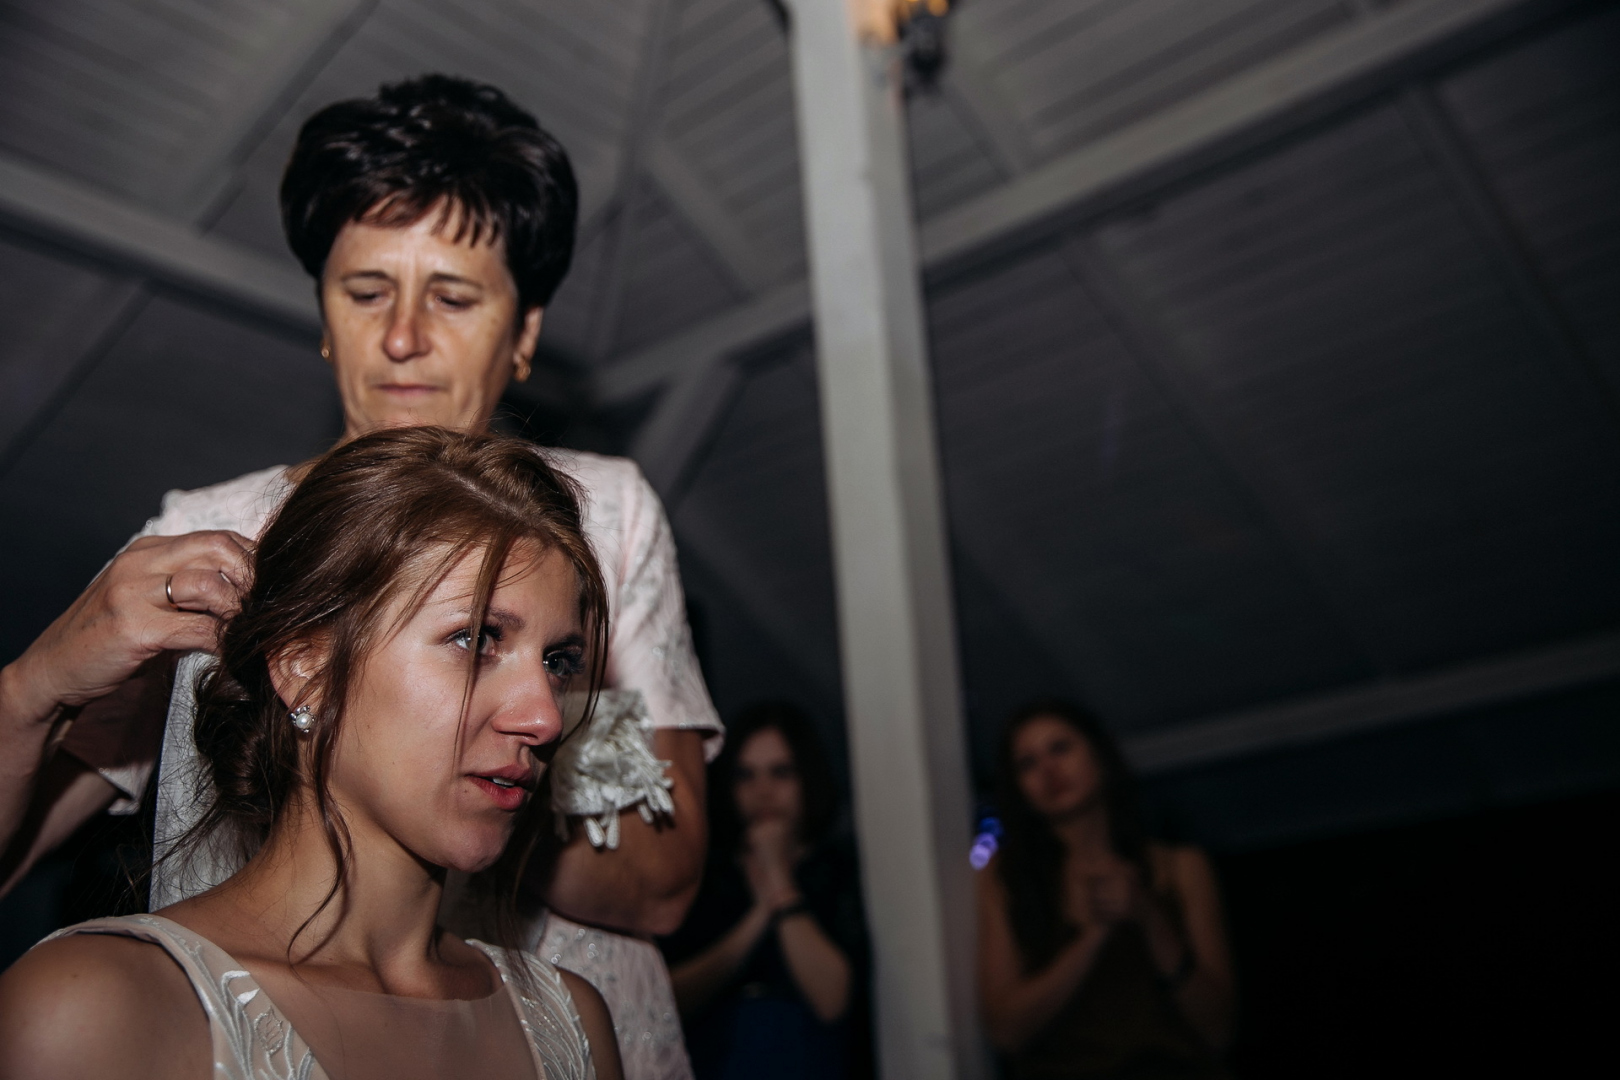 Анна Ликтаравичене - свадебный фотограф, семейный фотограф, фотограф беременных в городе Минск, Березино, Мядель, фотография от 11.01.2020